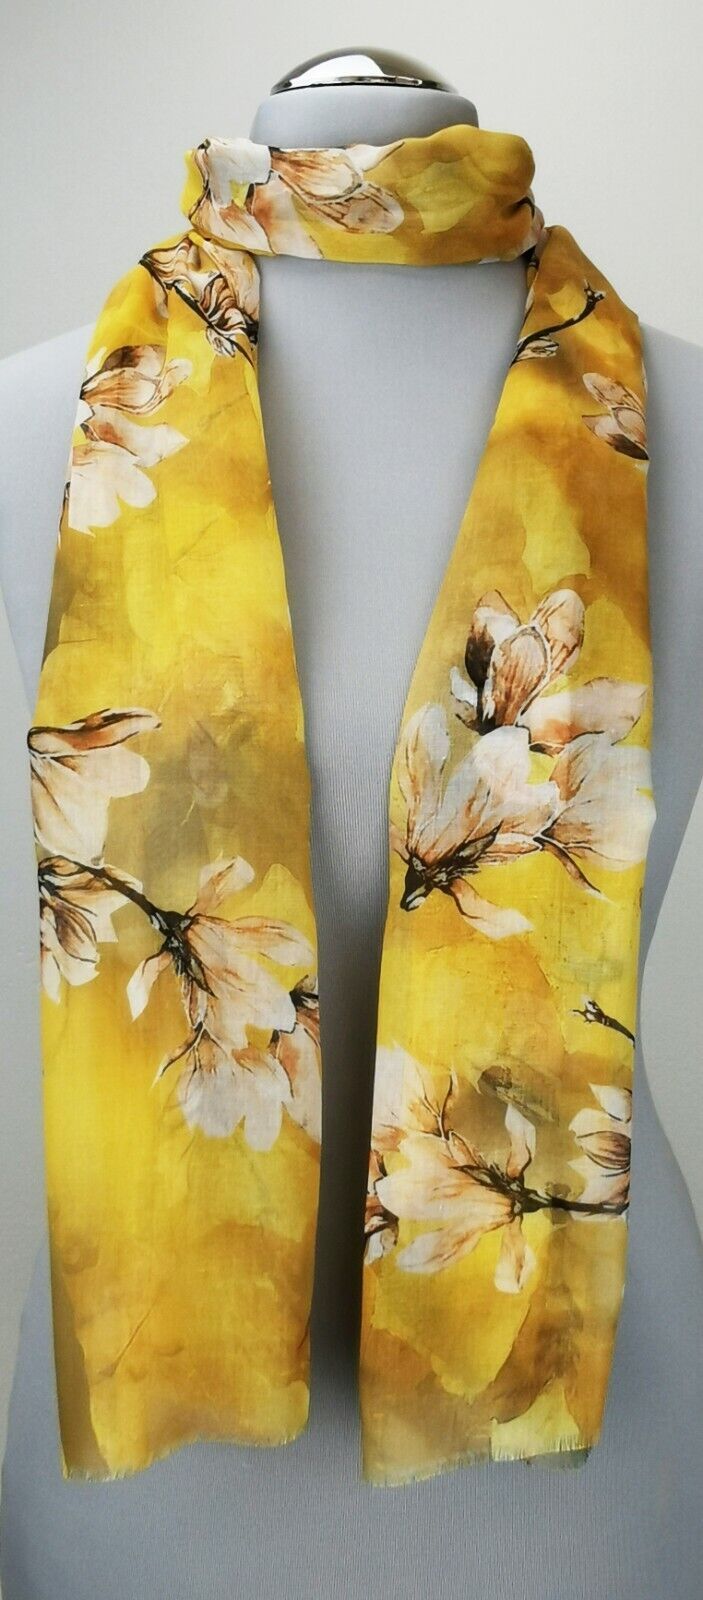 Leichter Damen-Schal, neu, 170 x 50 cm, gelb mit Blumenmuster, # 2232 